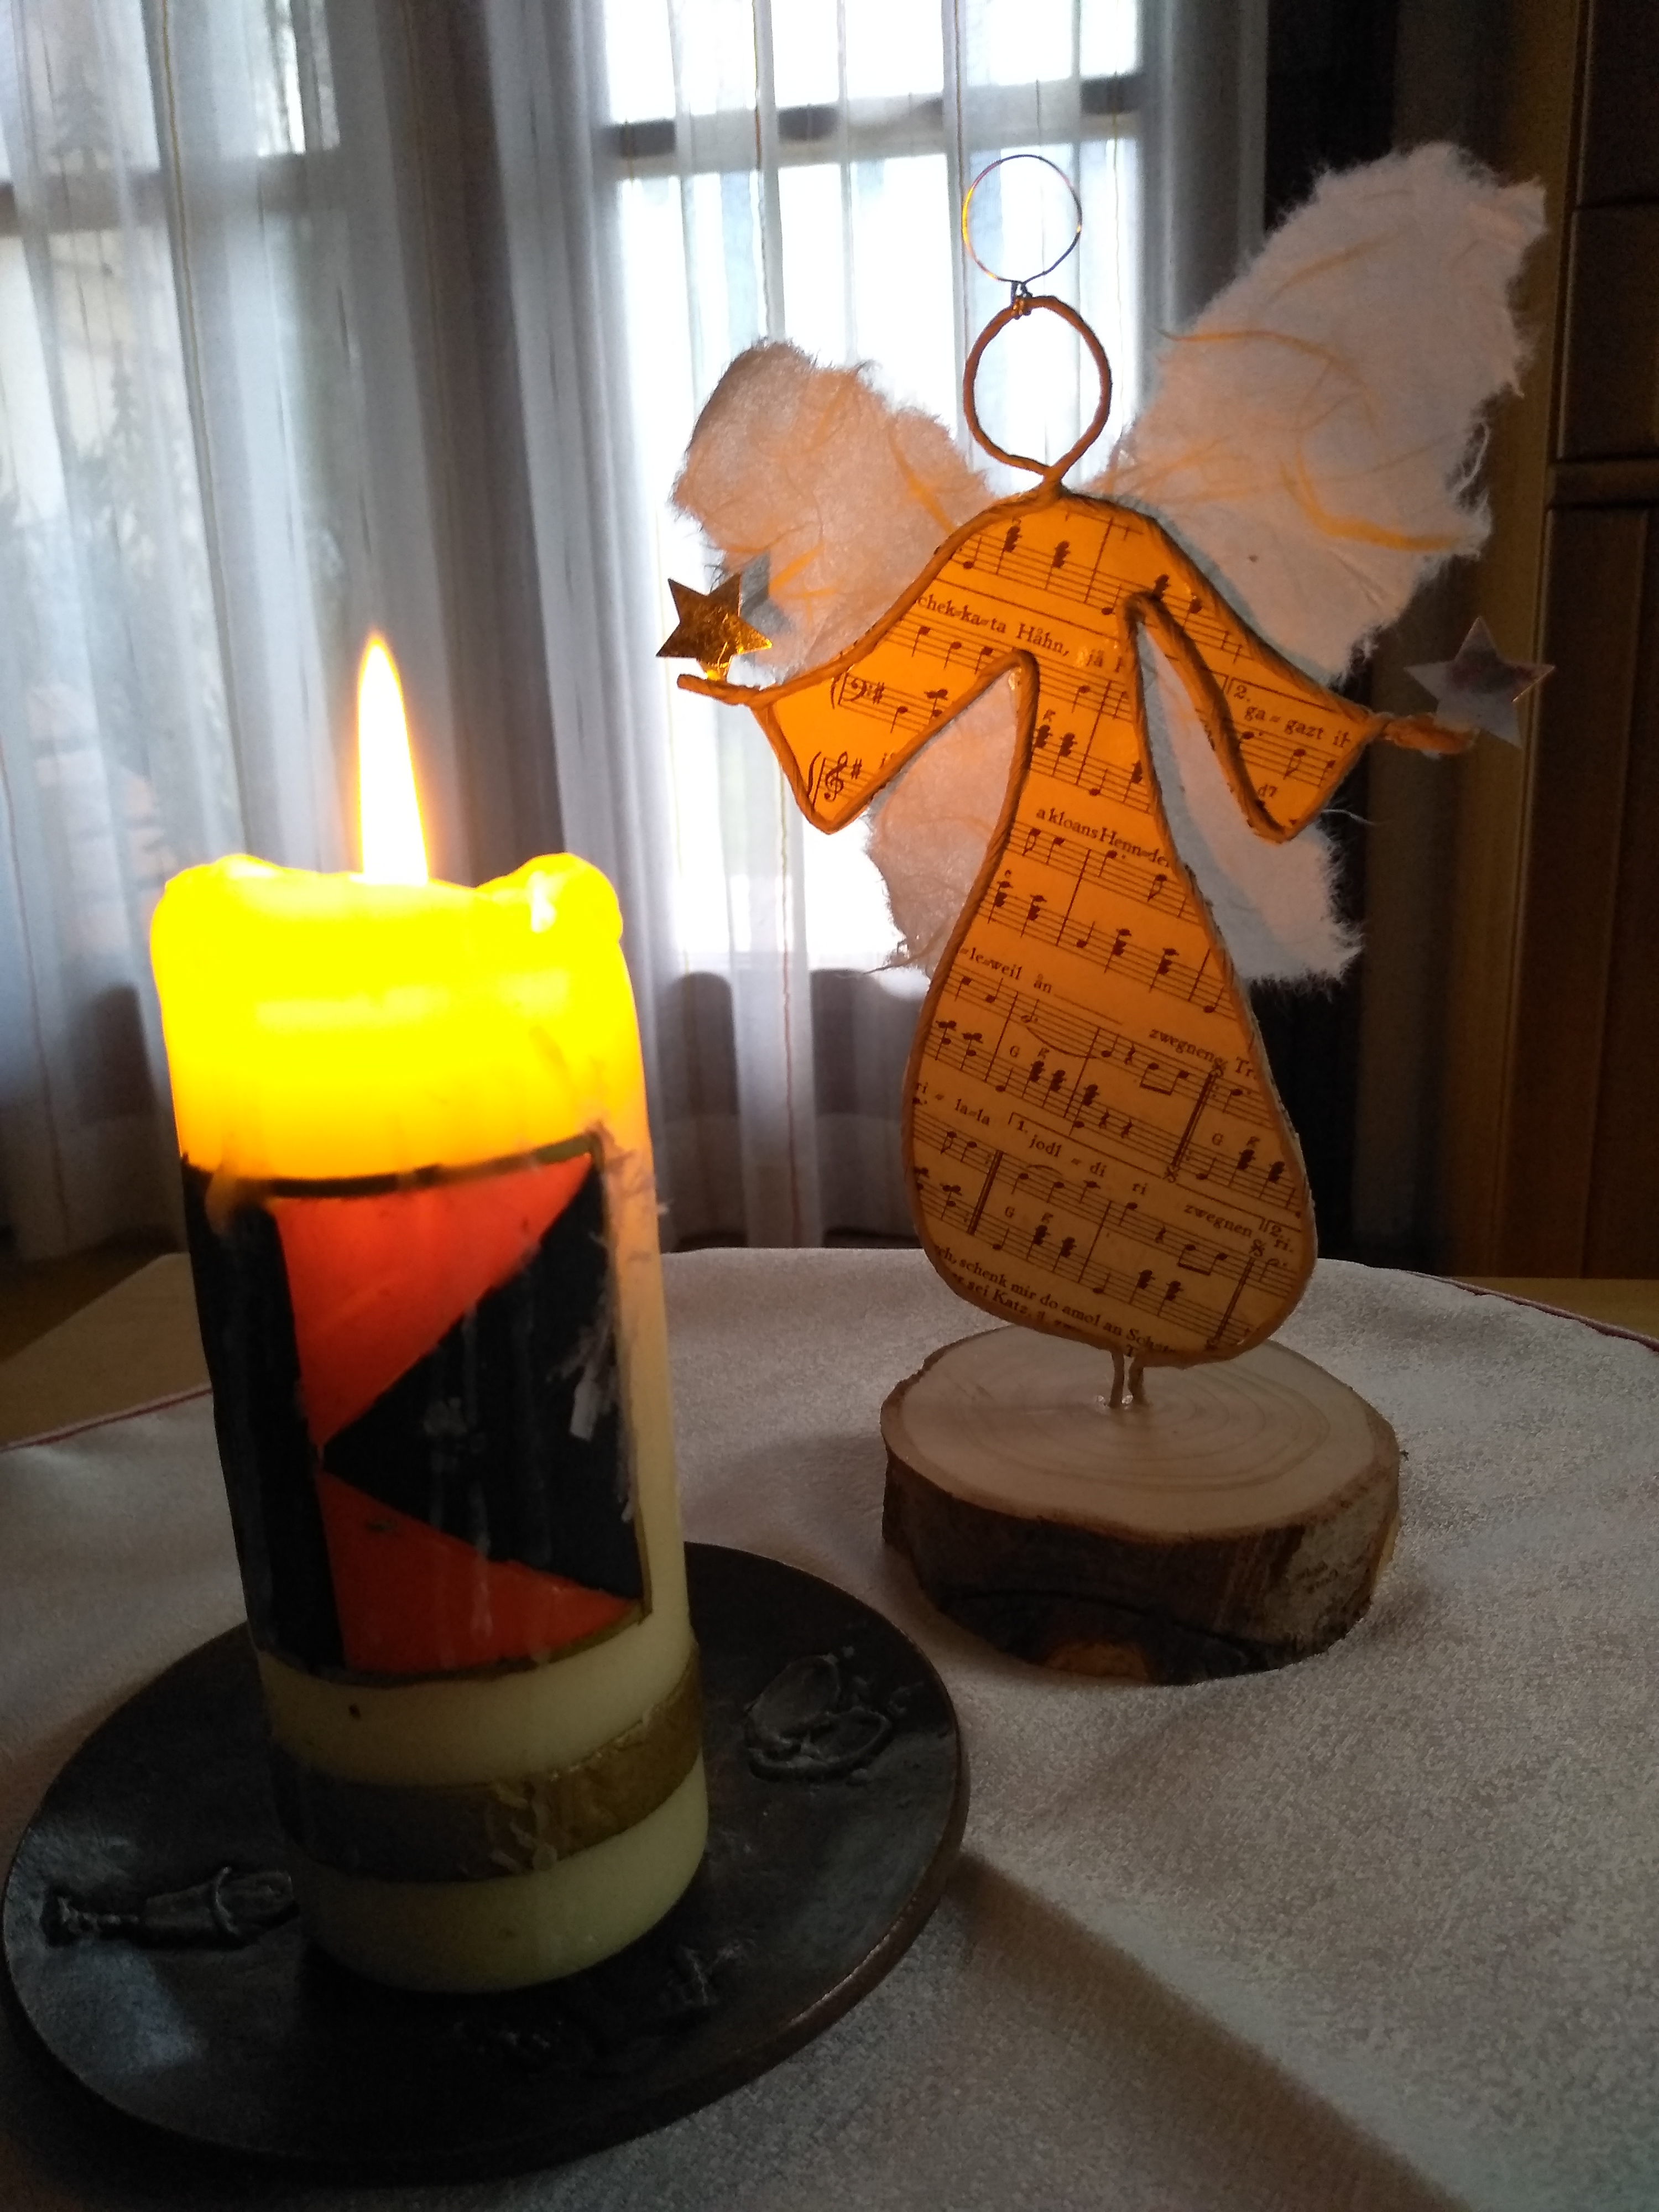 Bild mit Kerze und Engel zum Rundschreiben